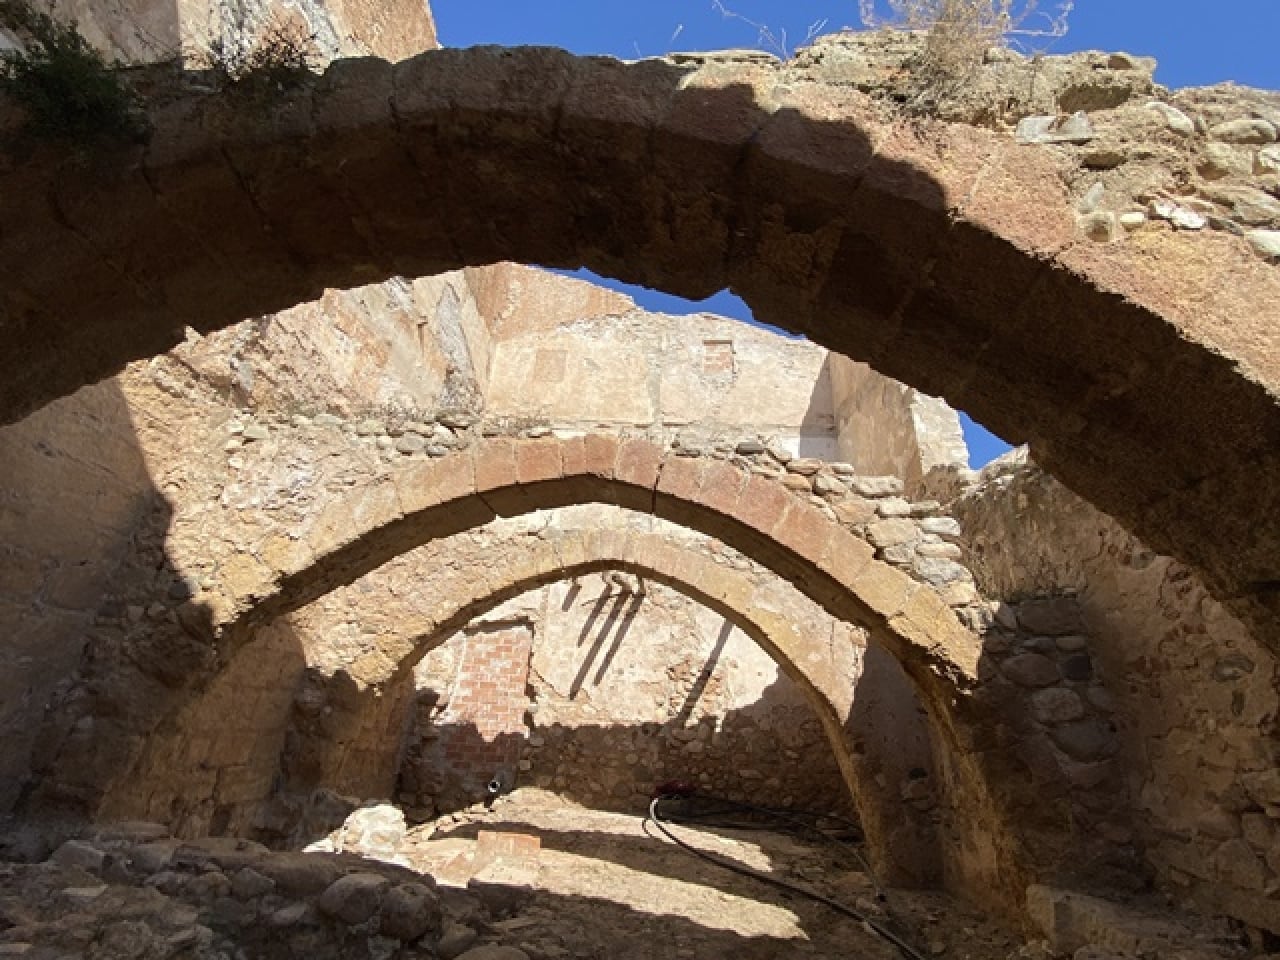 El molí de la Granja dels Frares del Morell ha estat objecte d’una intervenció arqueològica que ha permès excavar i buidar els cacaus que hi ha sota l’edifici